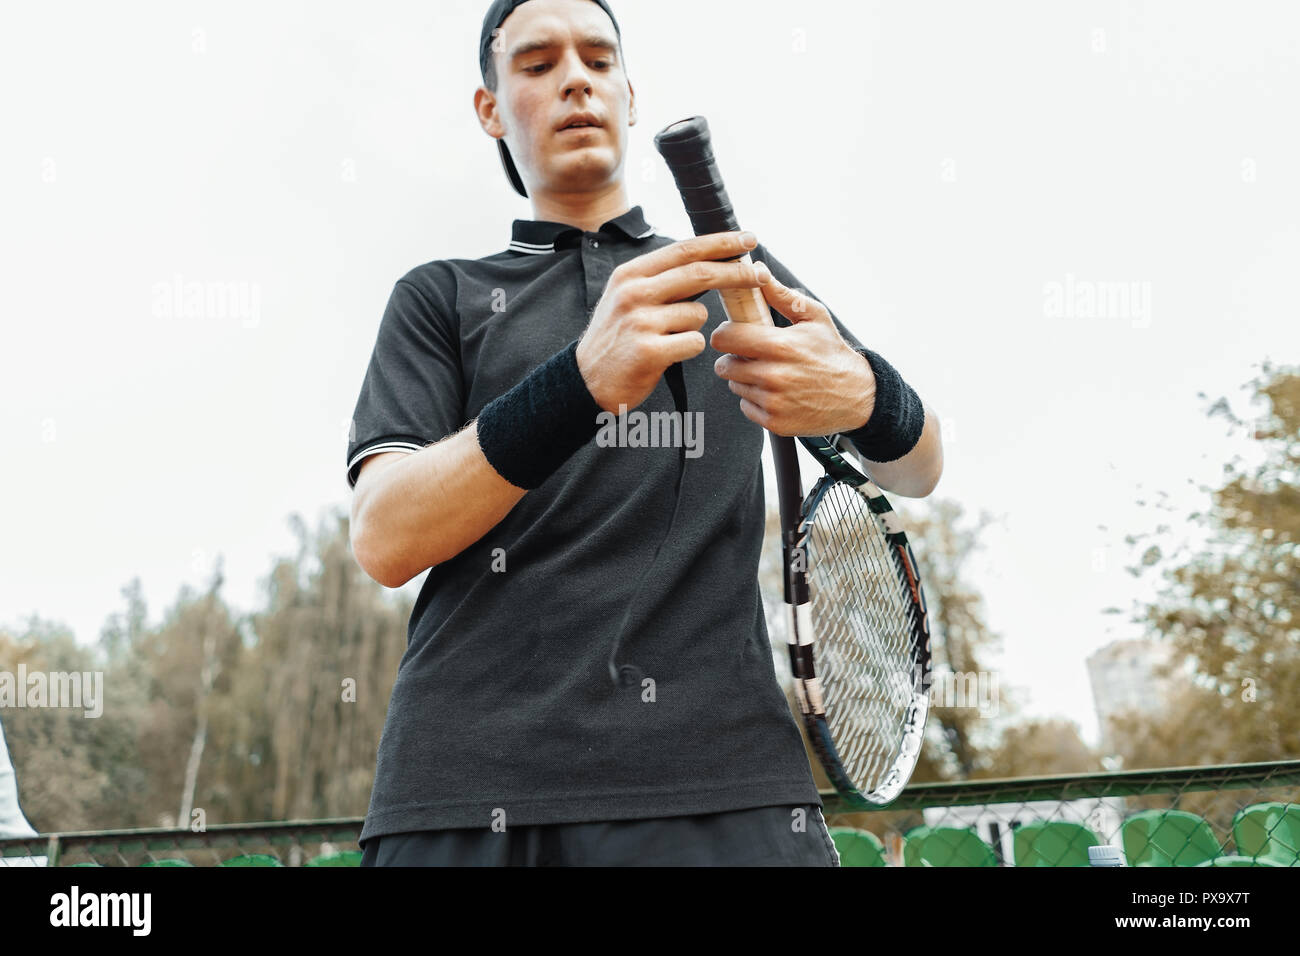 Man putting nouvelle bande de poignée de raquette de tennis. Ruban adhésif  d'emballage sur raquette Photo Stock - Alamy